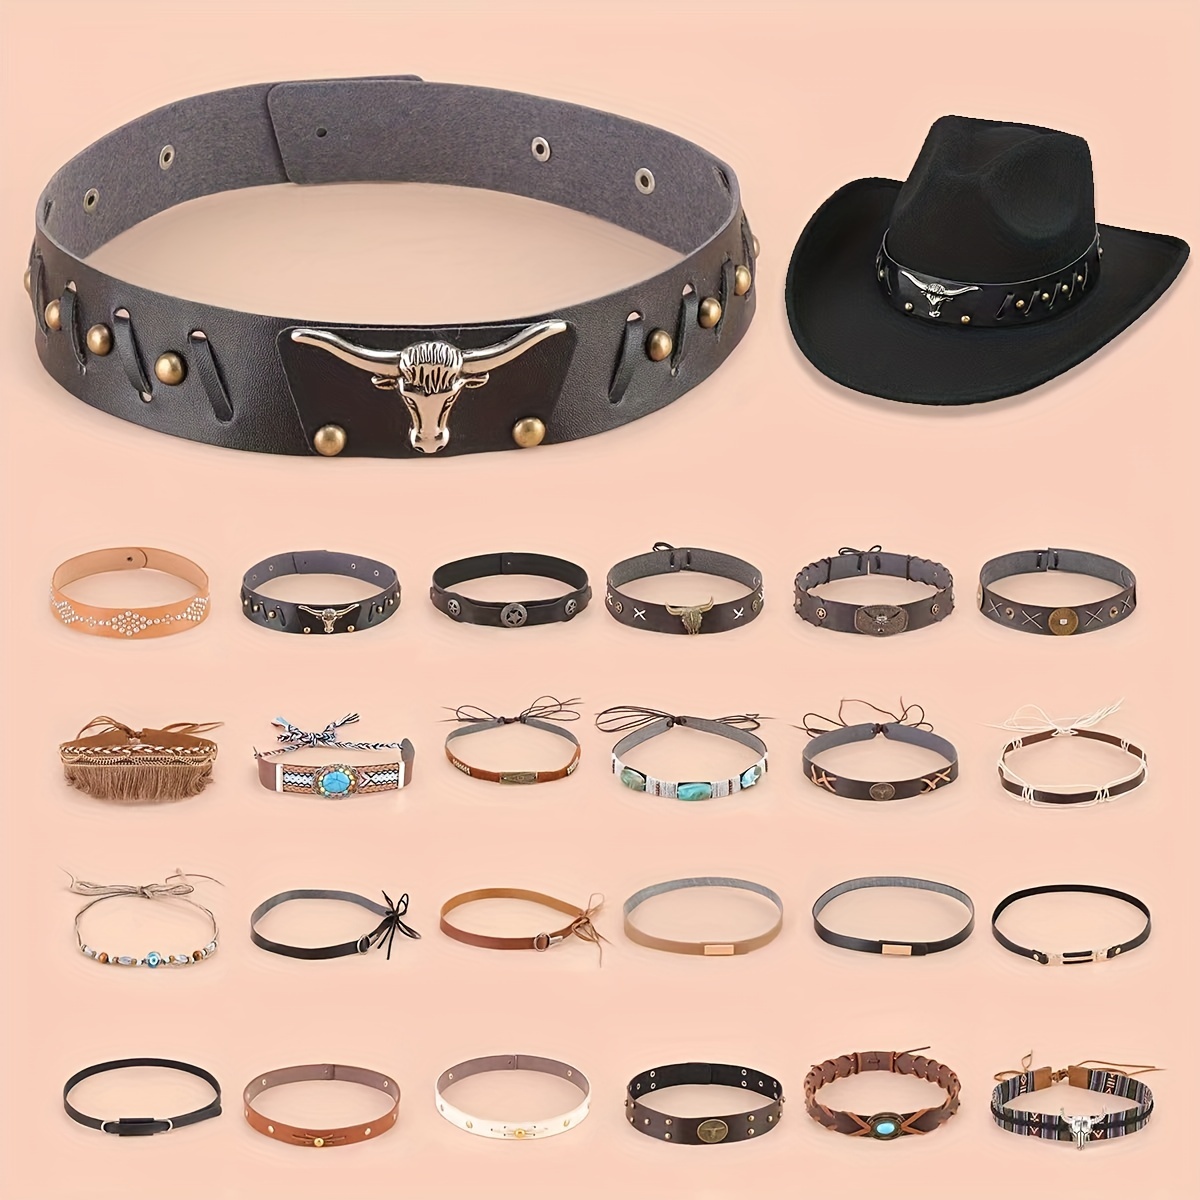 Louis Vuitton Belts  Accesorios para hombre, Cinturón de hombre,  Cinturones de moda